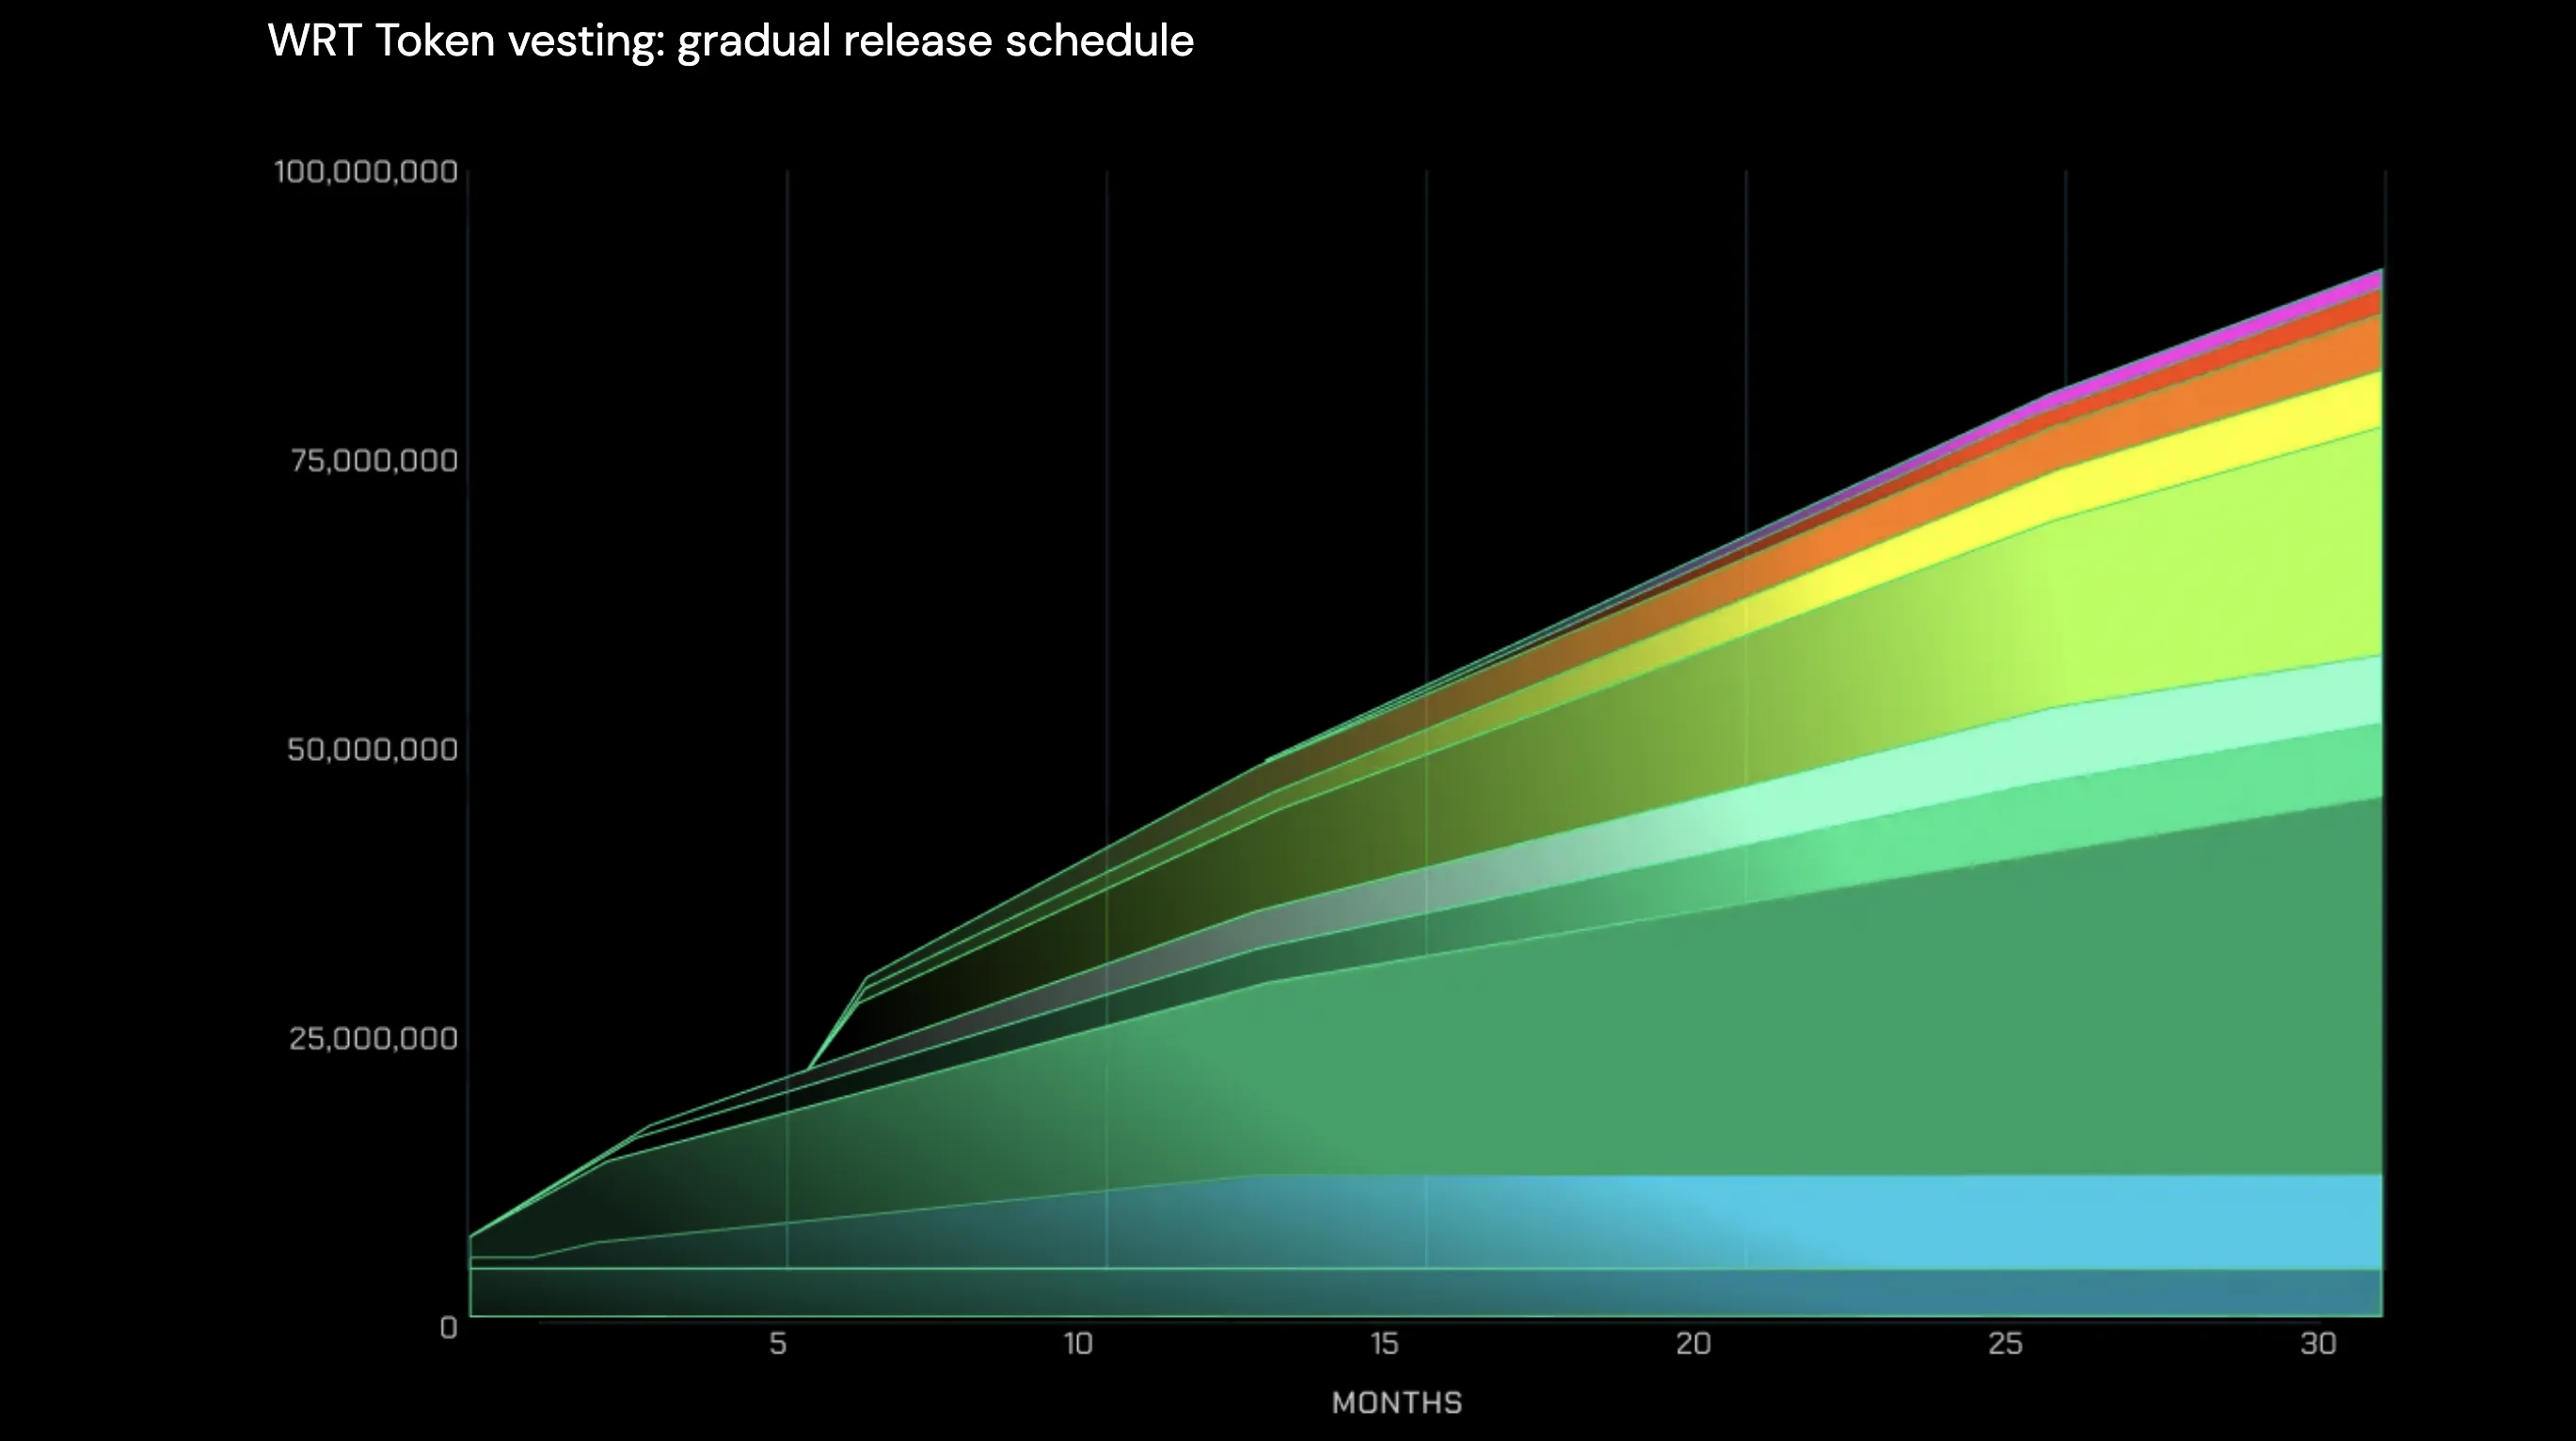 WRT gradual release schedule